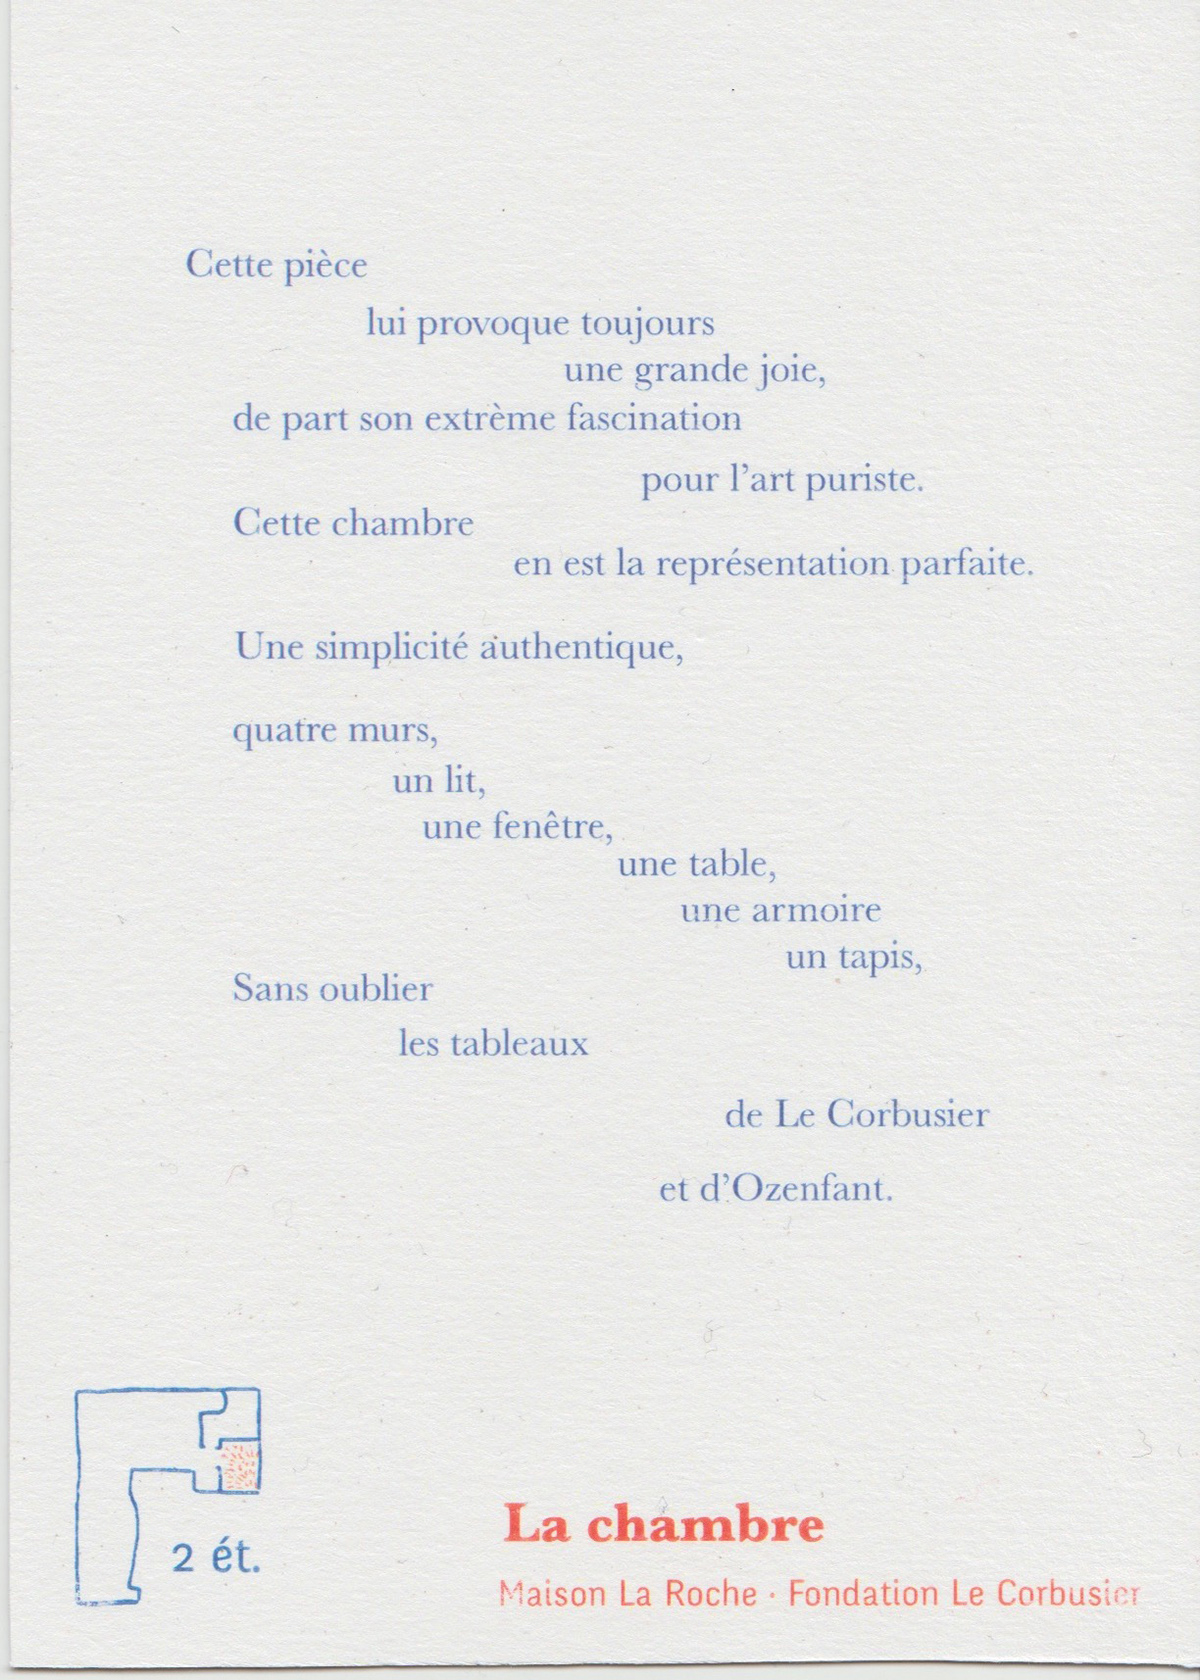 10 cartes illustrées échanges épistolaires fondation le corbusier Maiosn La Roche médiation culturelle Paris partenariat poésie Recueil trace du passé